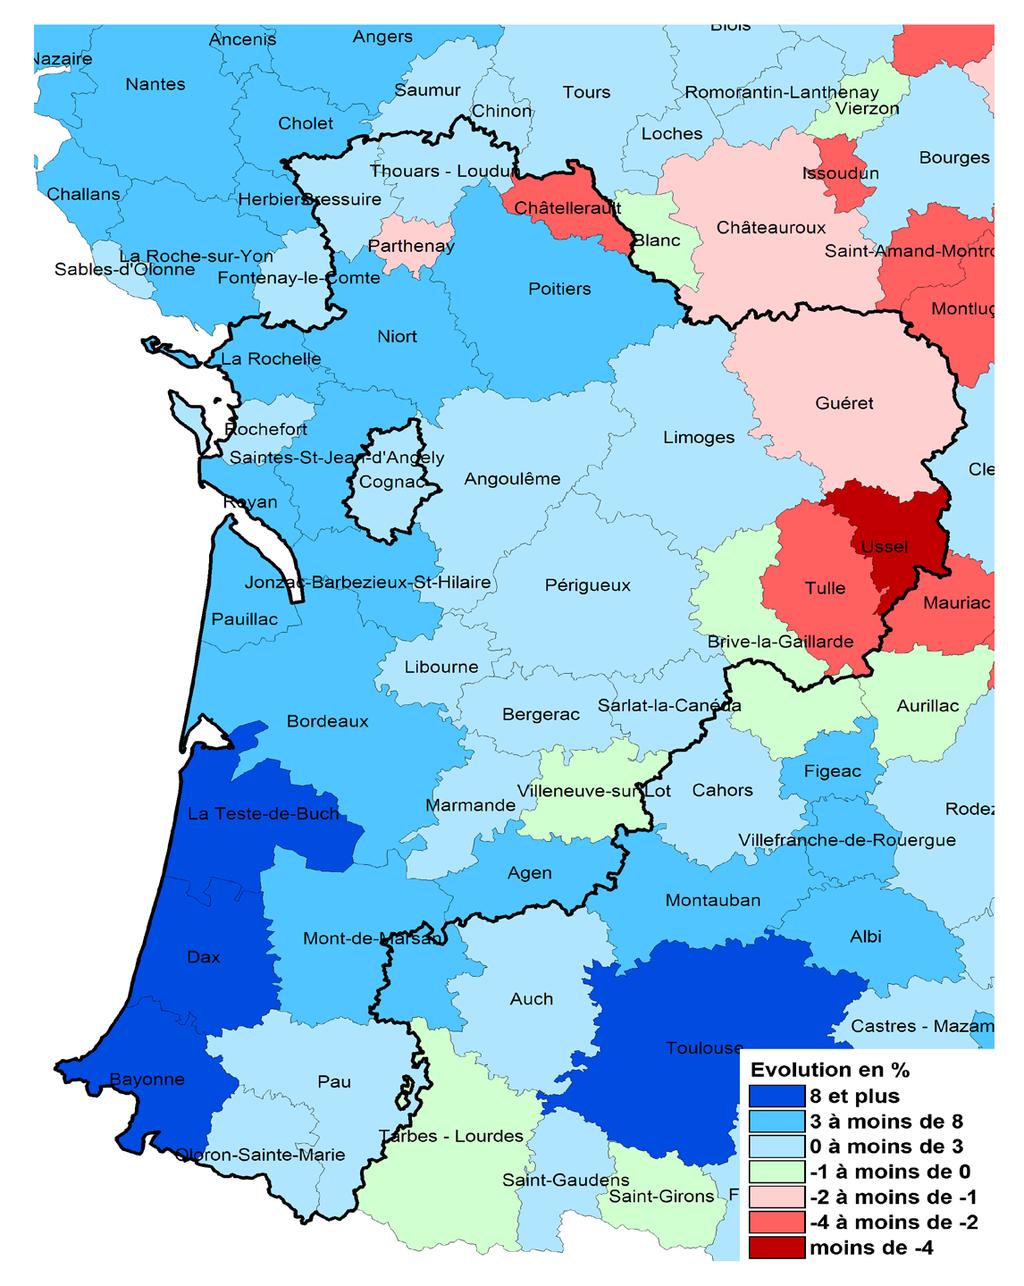 Approche économique des 33 zones d'emploi de la Nouvelle-Aquitaine - ZE DÉMOGRAPHIE IMPACT SUR UN AN DES MIGRATIONS PAR CLASSE D'ÂGE QUINQUENNAL Solde migratoire (entrées - sorties) rapporté à la